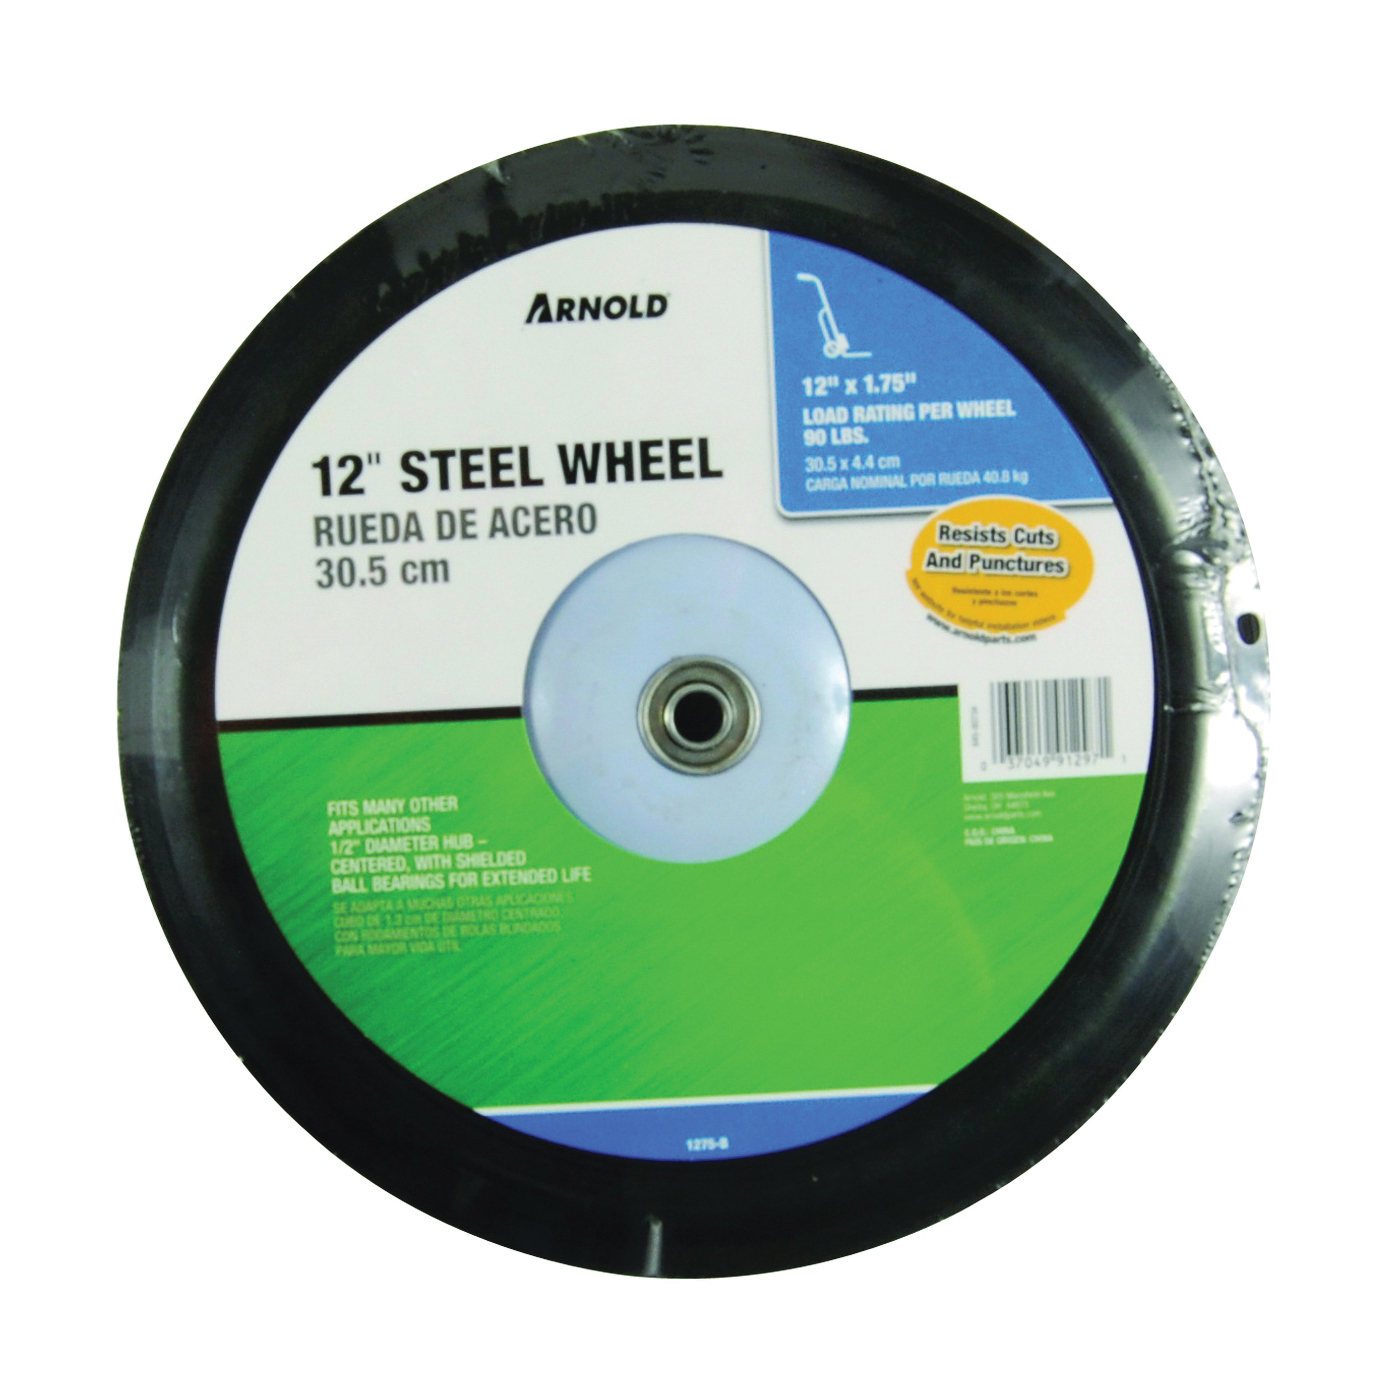 1275-B Tread Wheel, Semi-Pneumatic, Steel, For: Lawn Mowers